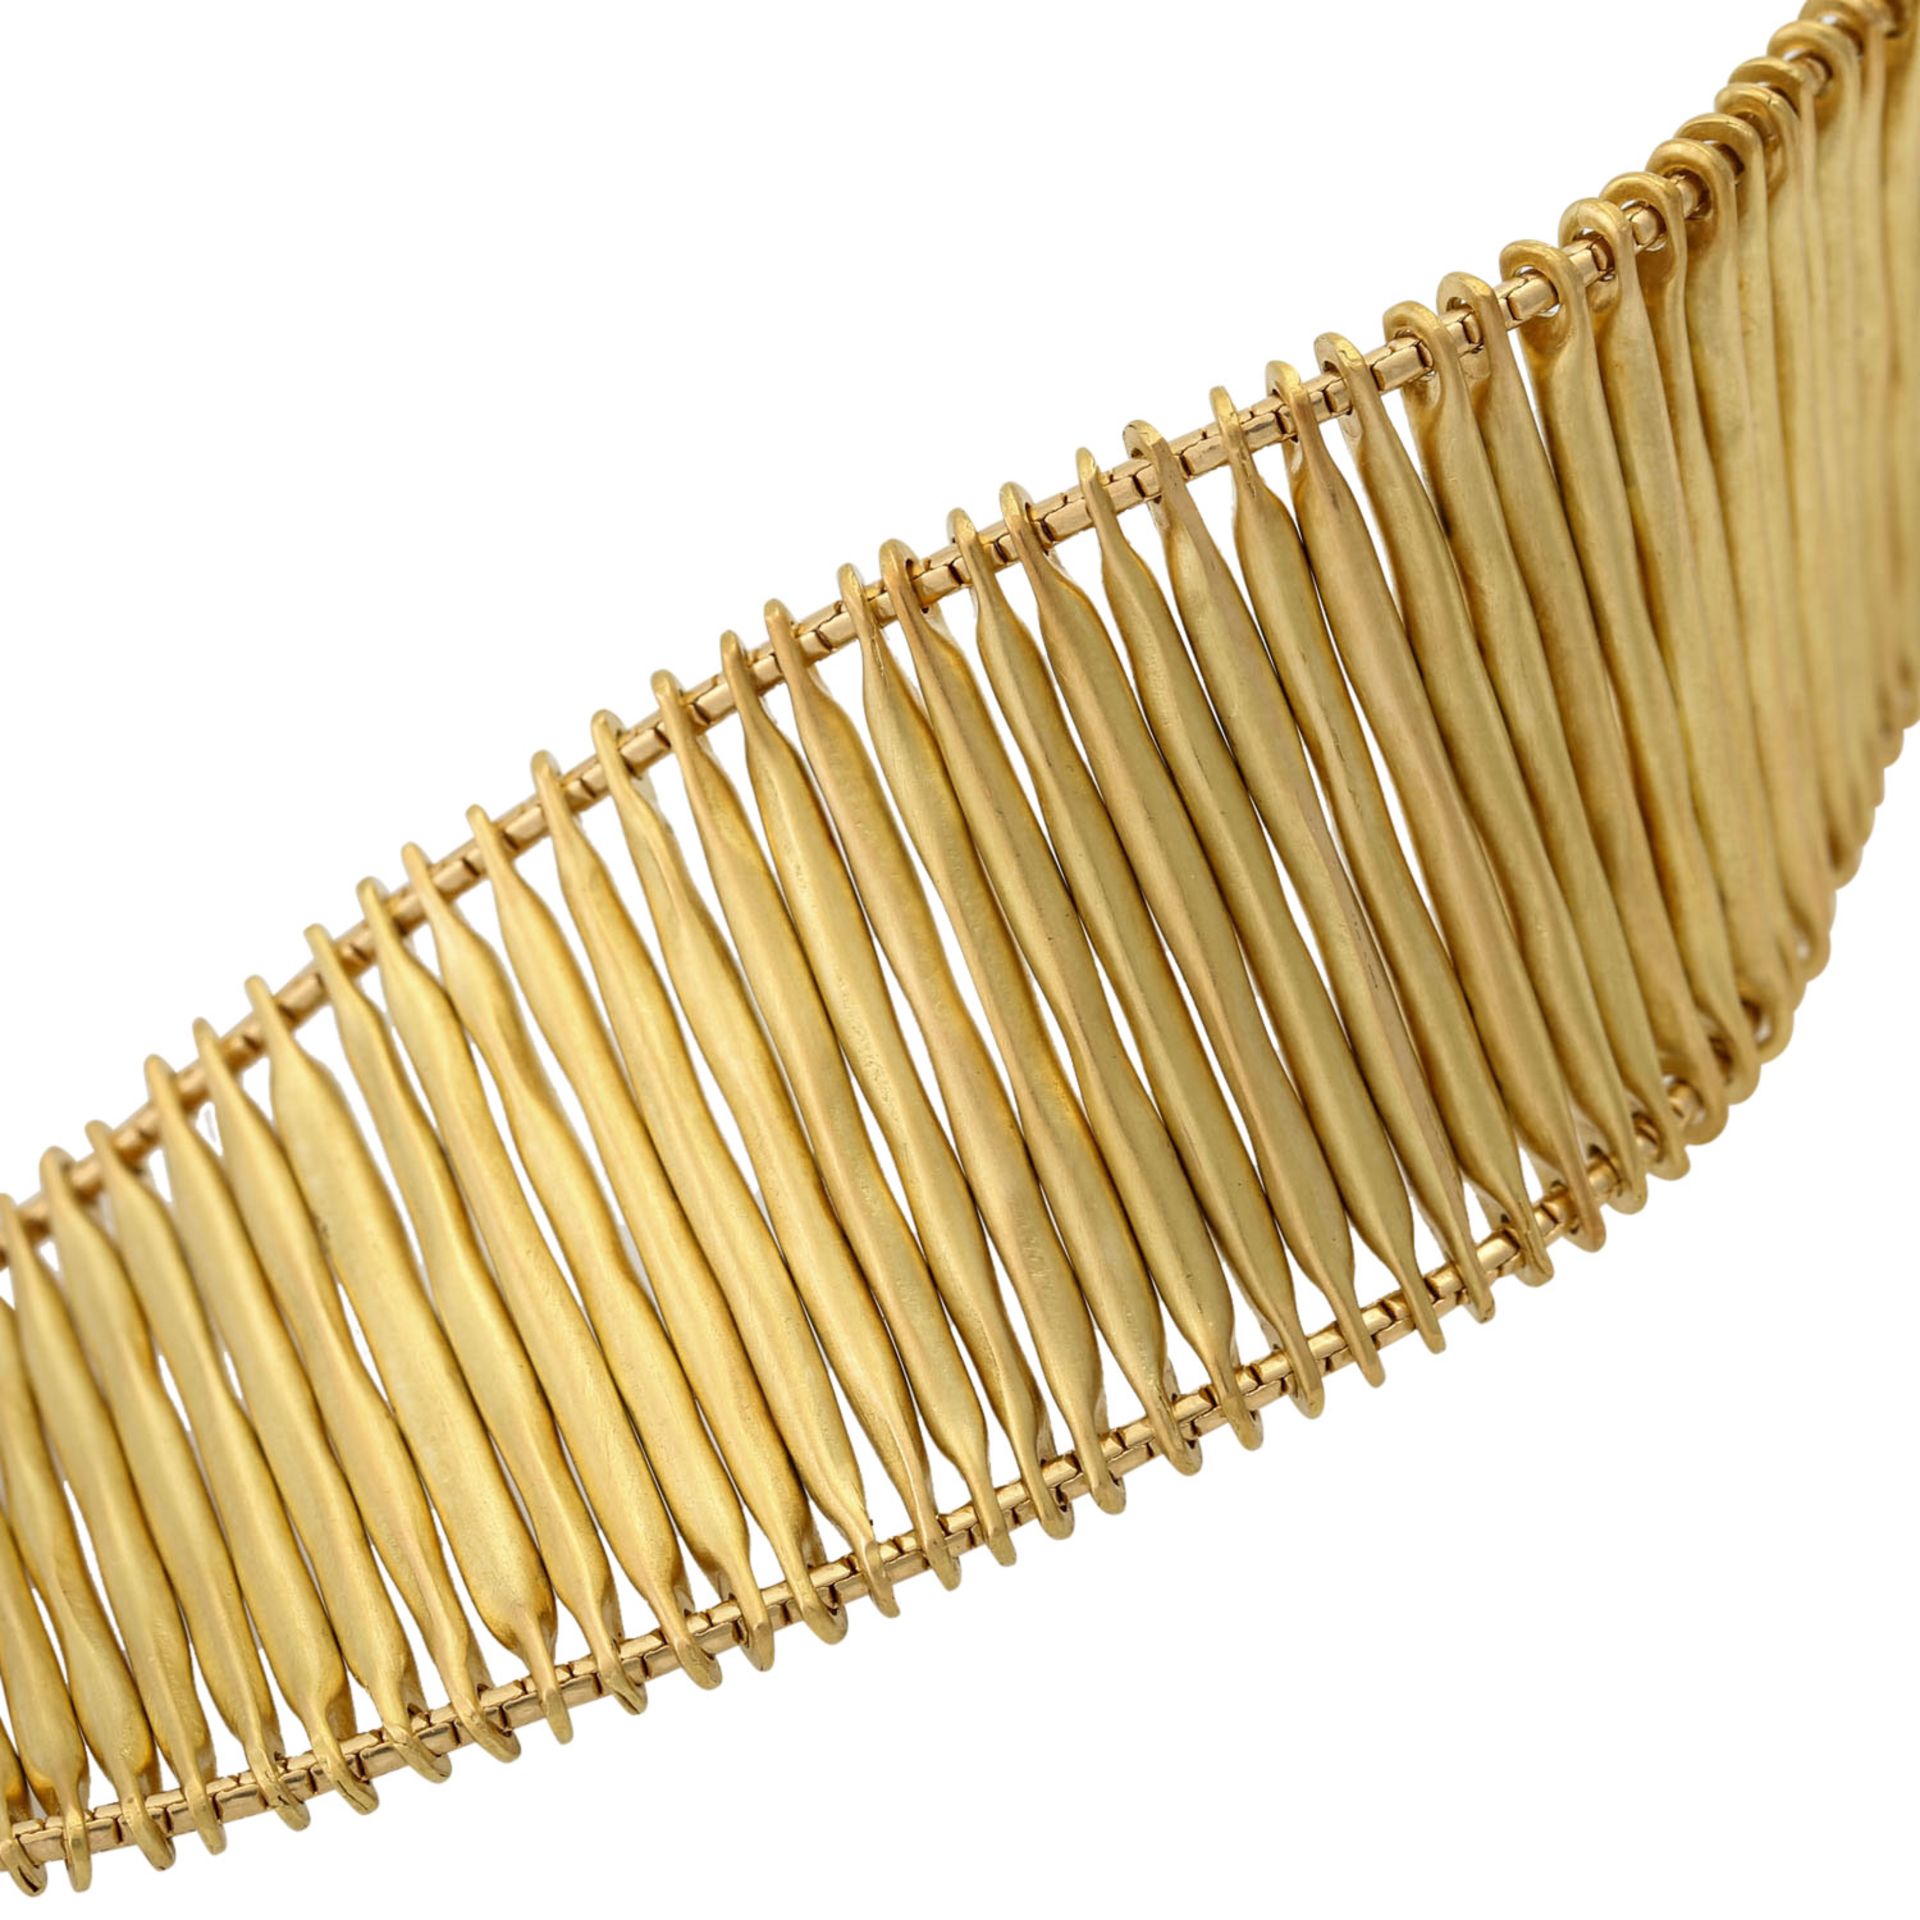 H. STERN Filament-Armband,GG 18K, 51,8 g, L: 20 cm, 20./21. Jh., guter Erhalt, mit Kol - Image 5 of 6